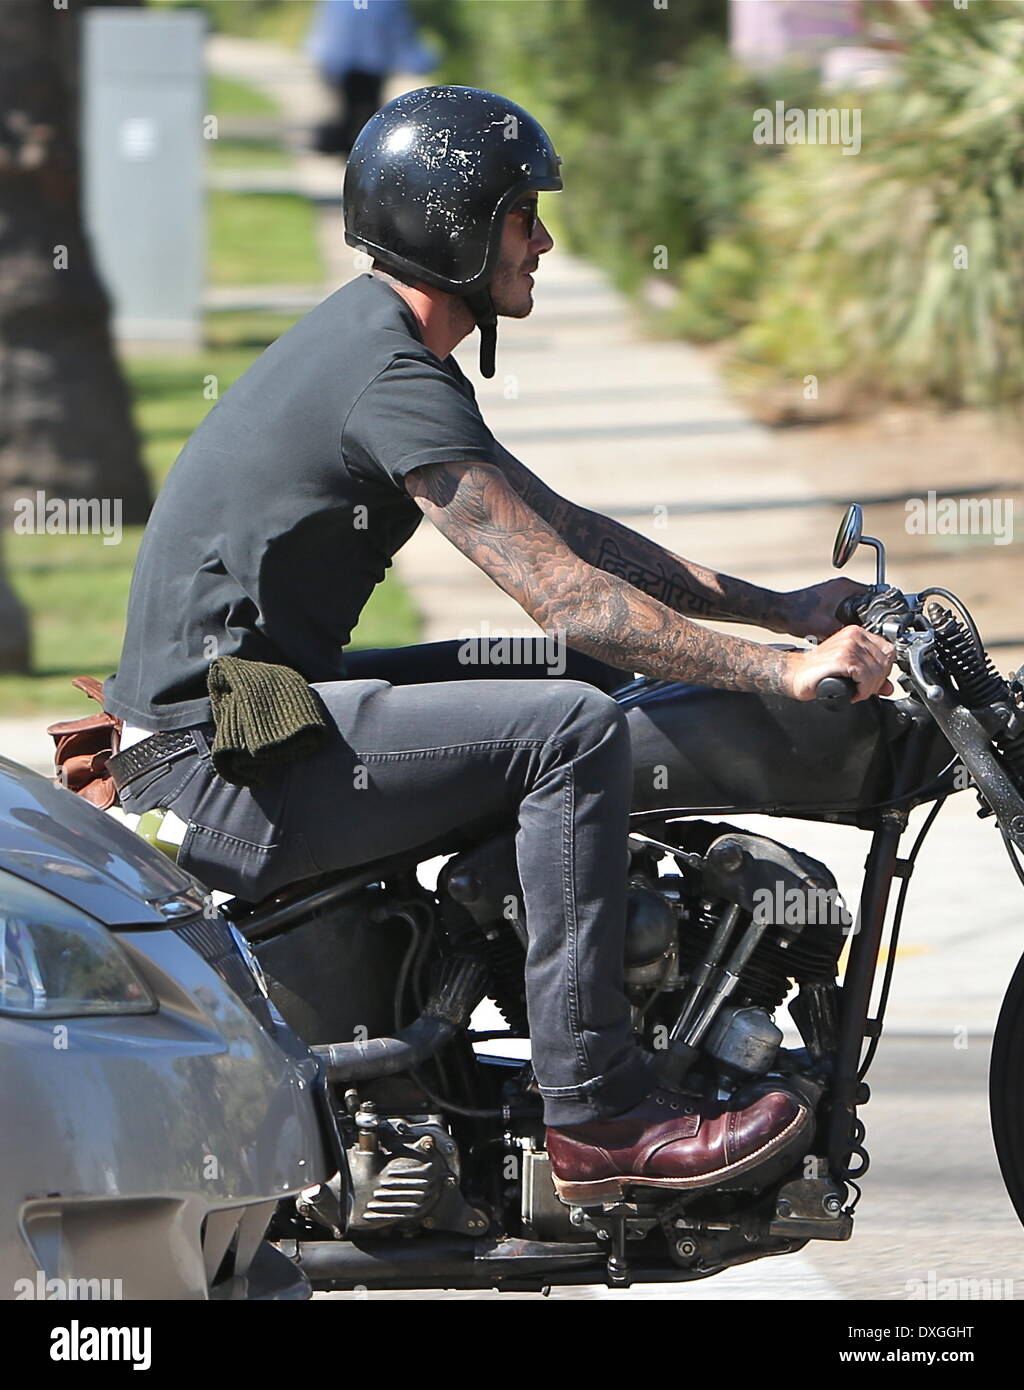 David Beckham nimmt sein Motorrad für eine Fahrt in Beverly Hills, Los  Angeles, Kalifornien - 17.10.12 Featuring: David Beckham When  Stockfotografie - Alamy